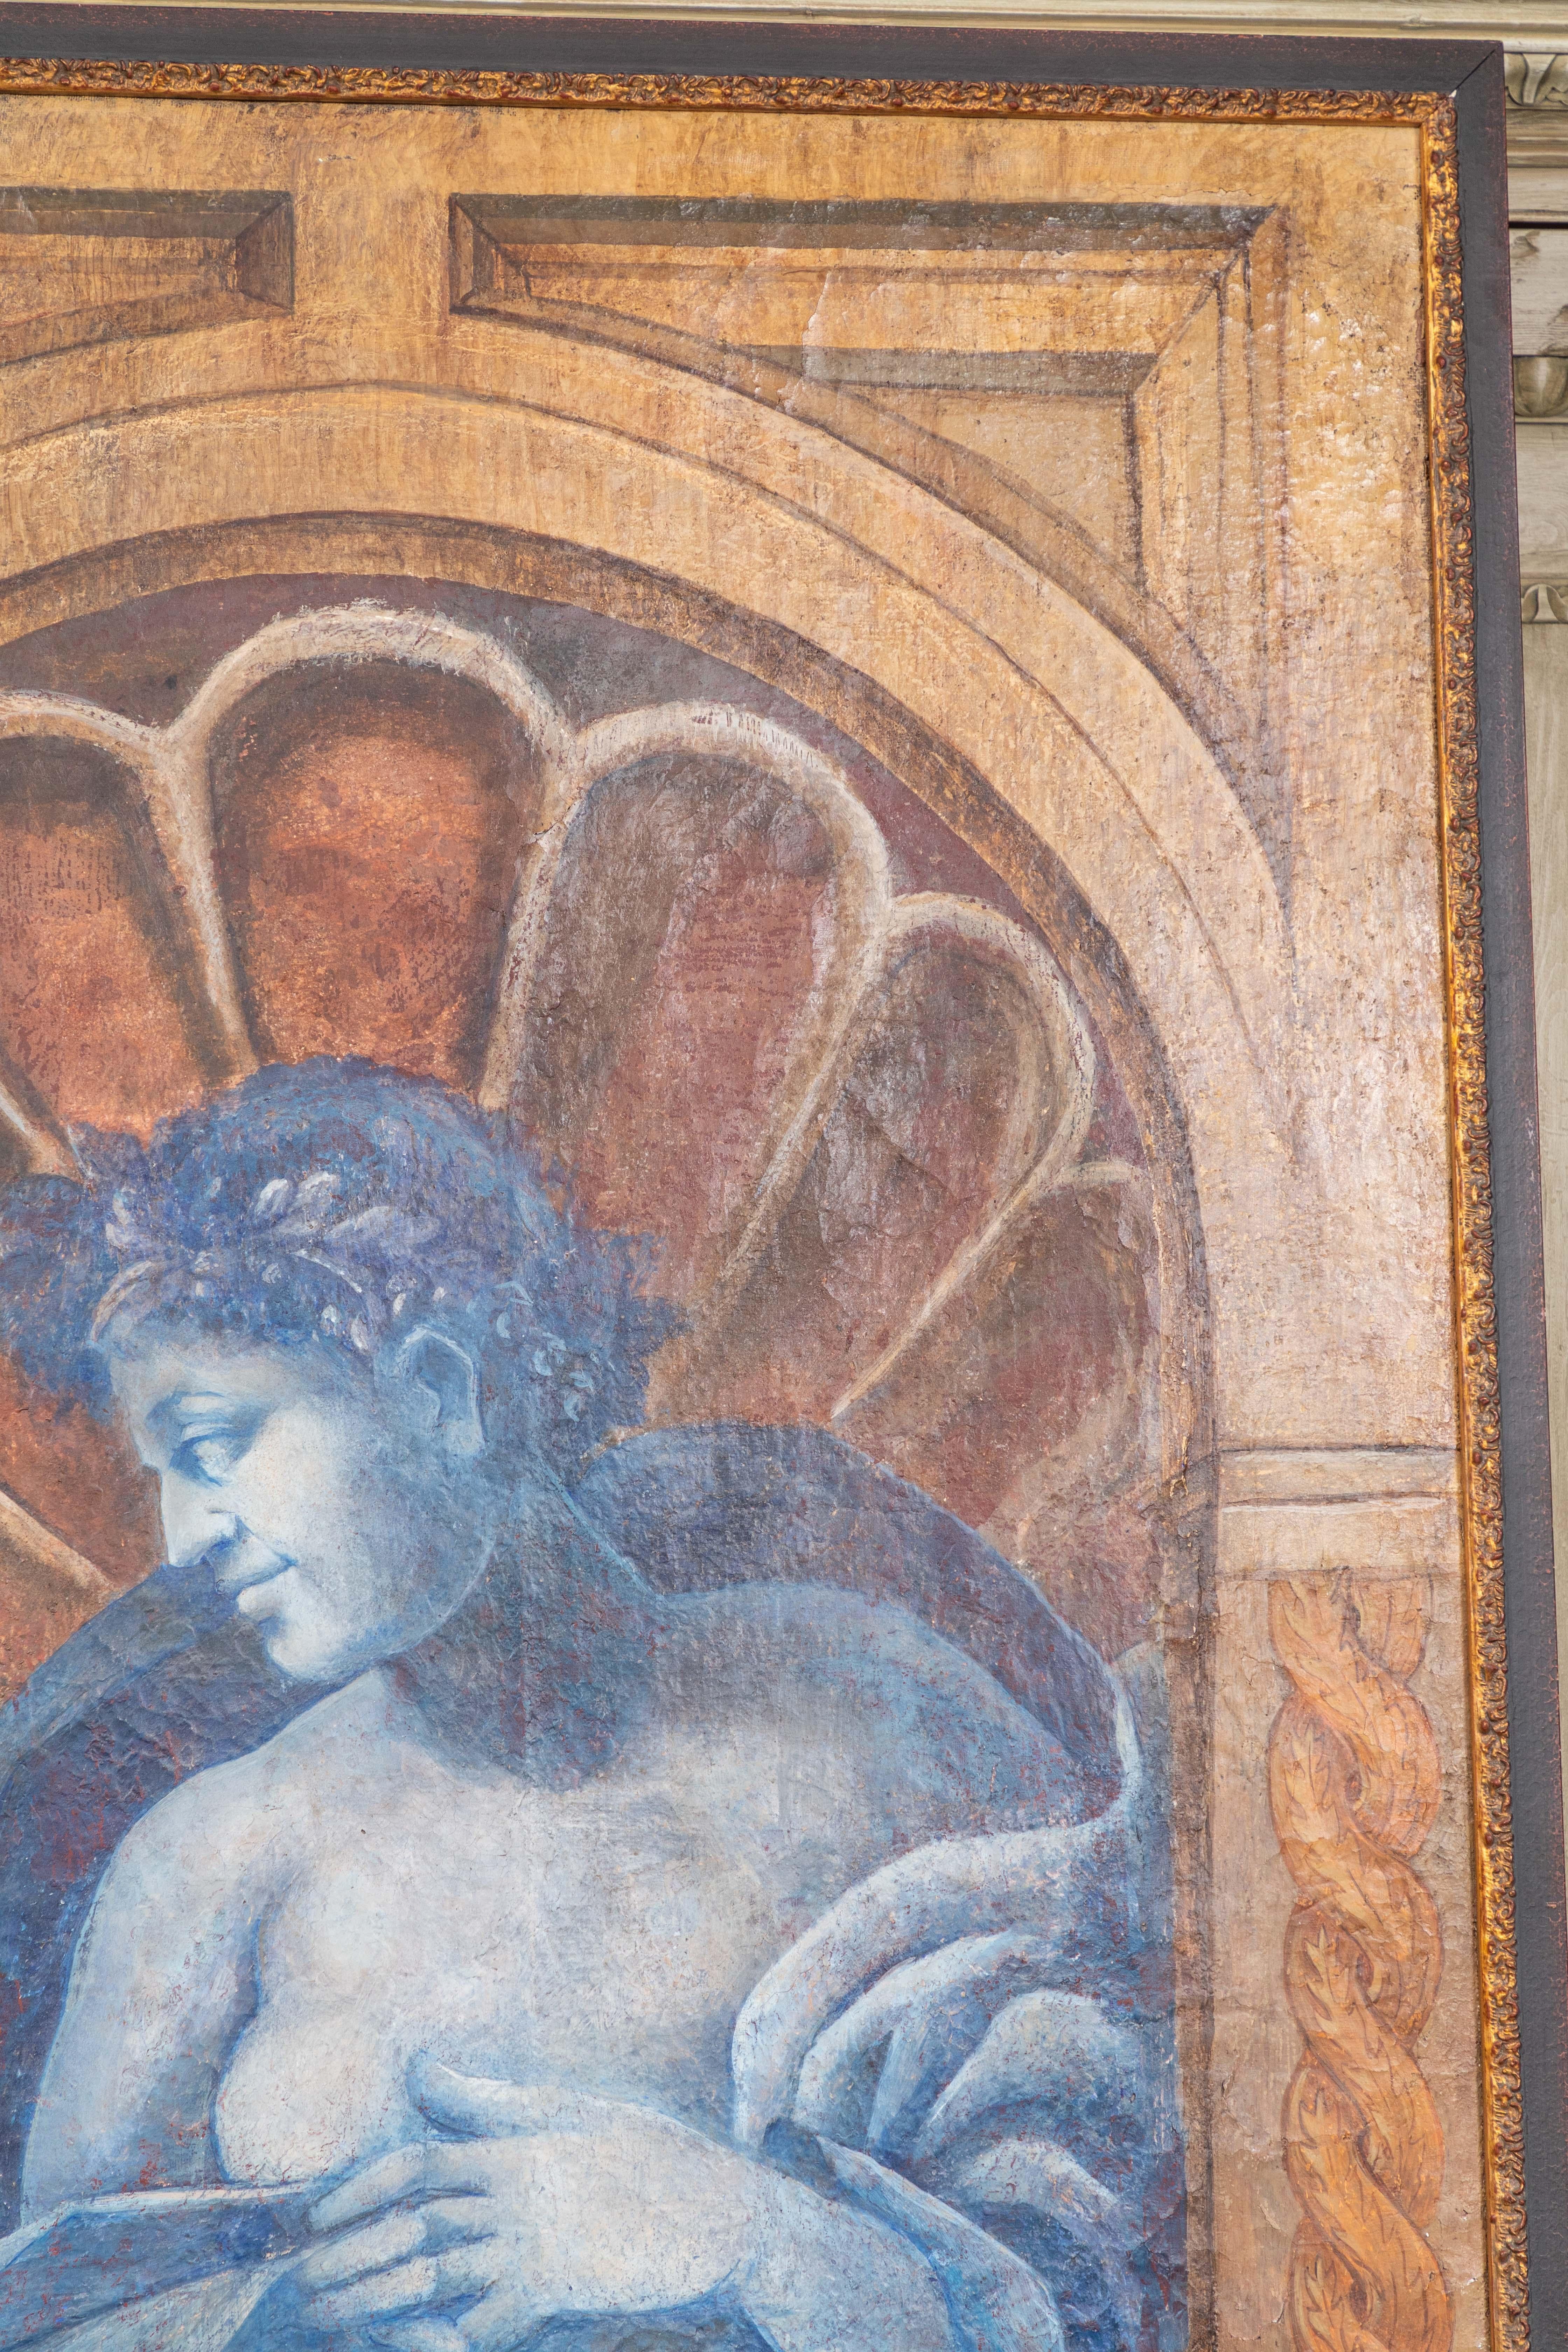 Au-delà de la grandeur nature, cette peinture à l'huile allégorique de la Renaissance représente l'été, avec une nymphe encastrée dans une alcôve, enveloppée d'une draperie et coiffée d'une couronne de feuillage. Dans sa main droite, une corne